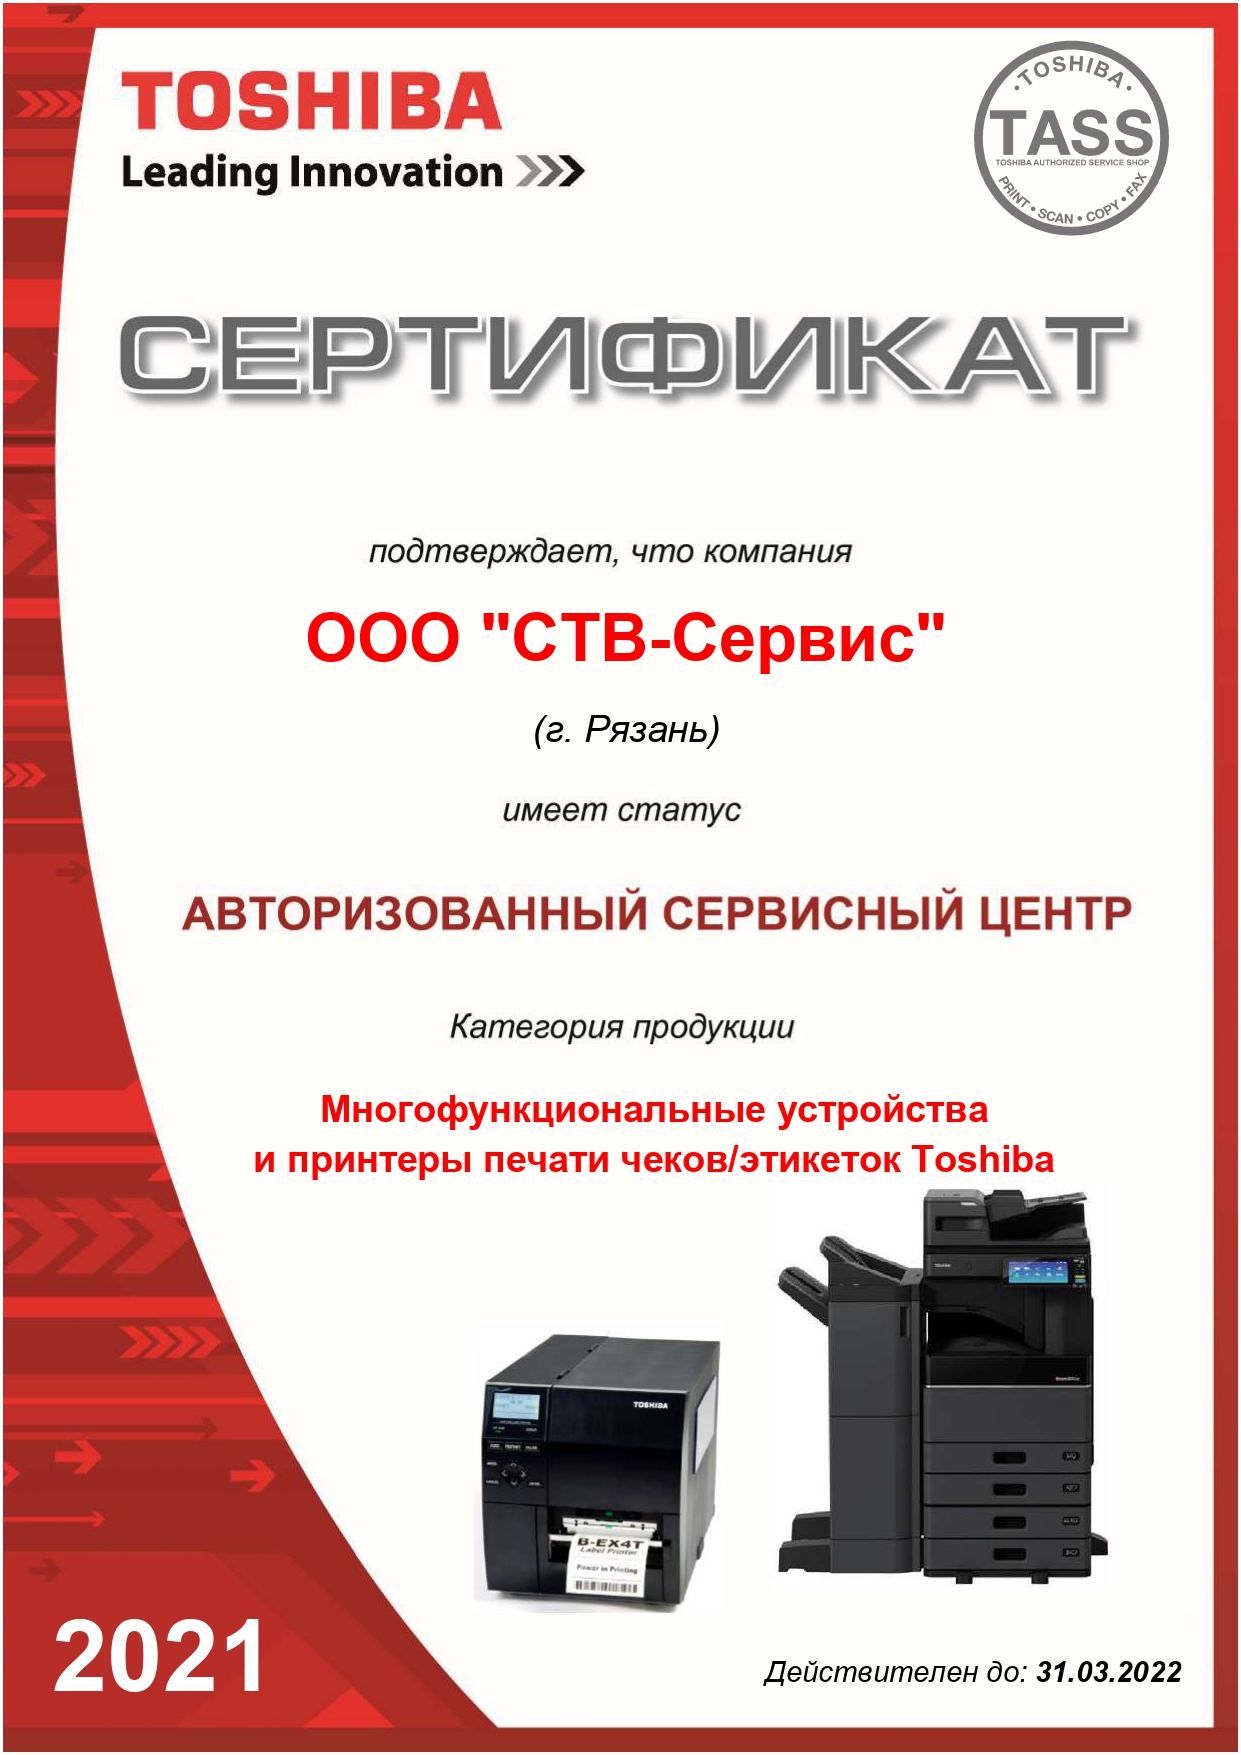 Авторизованный сервисный центр многофункциональных устройств и принтеров печати чеков/этикеток Toshiba